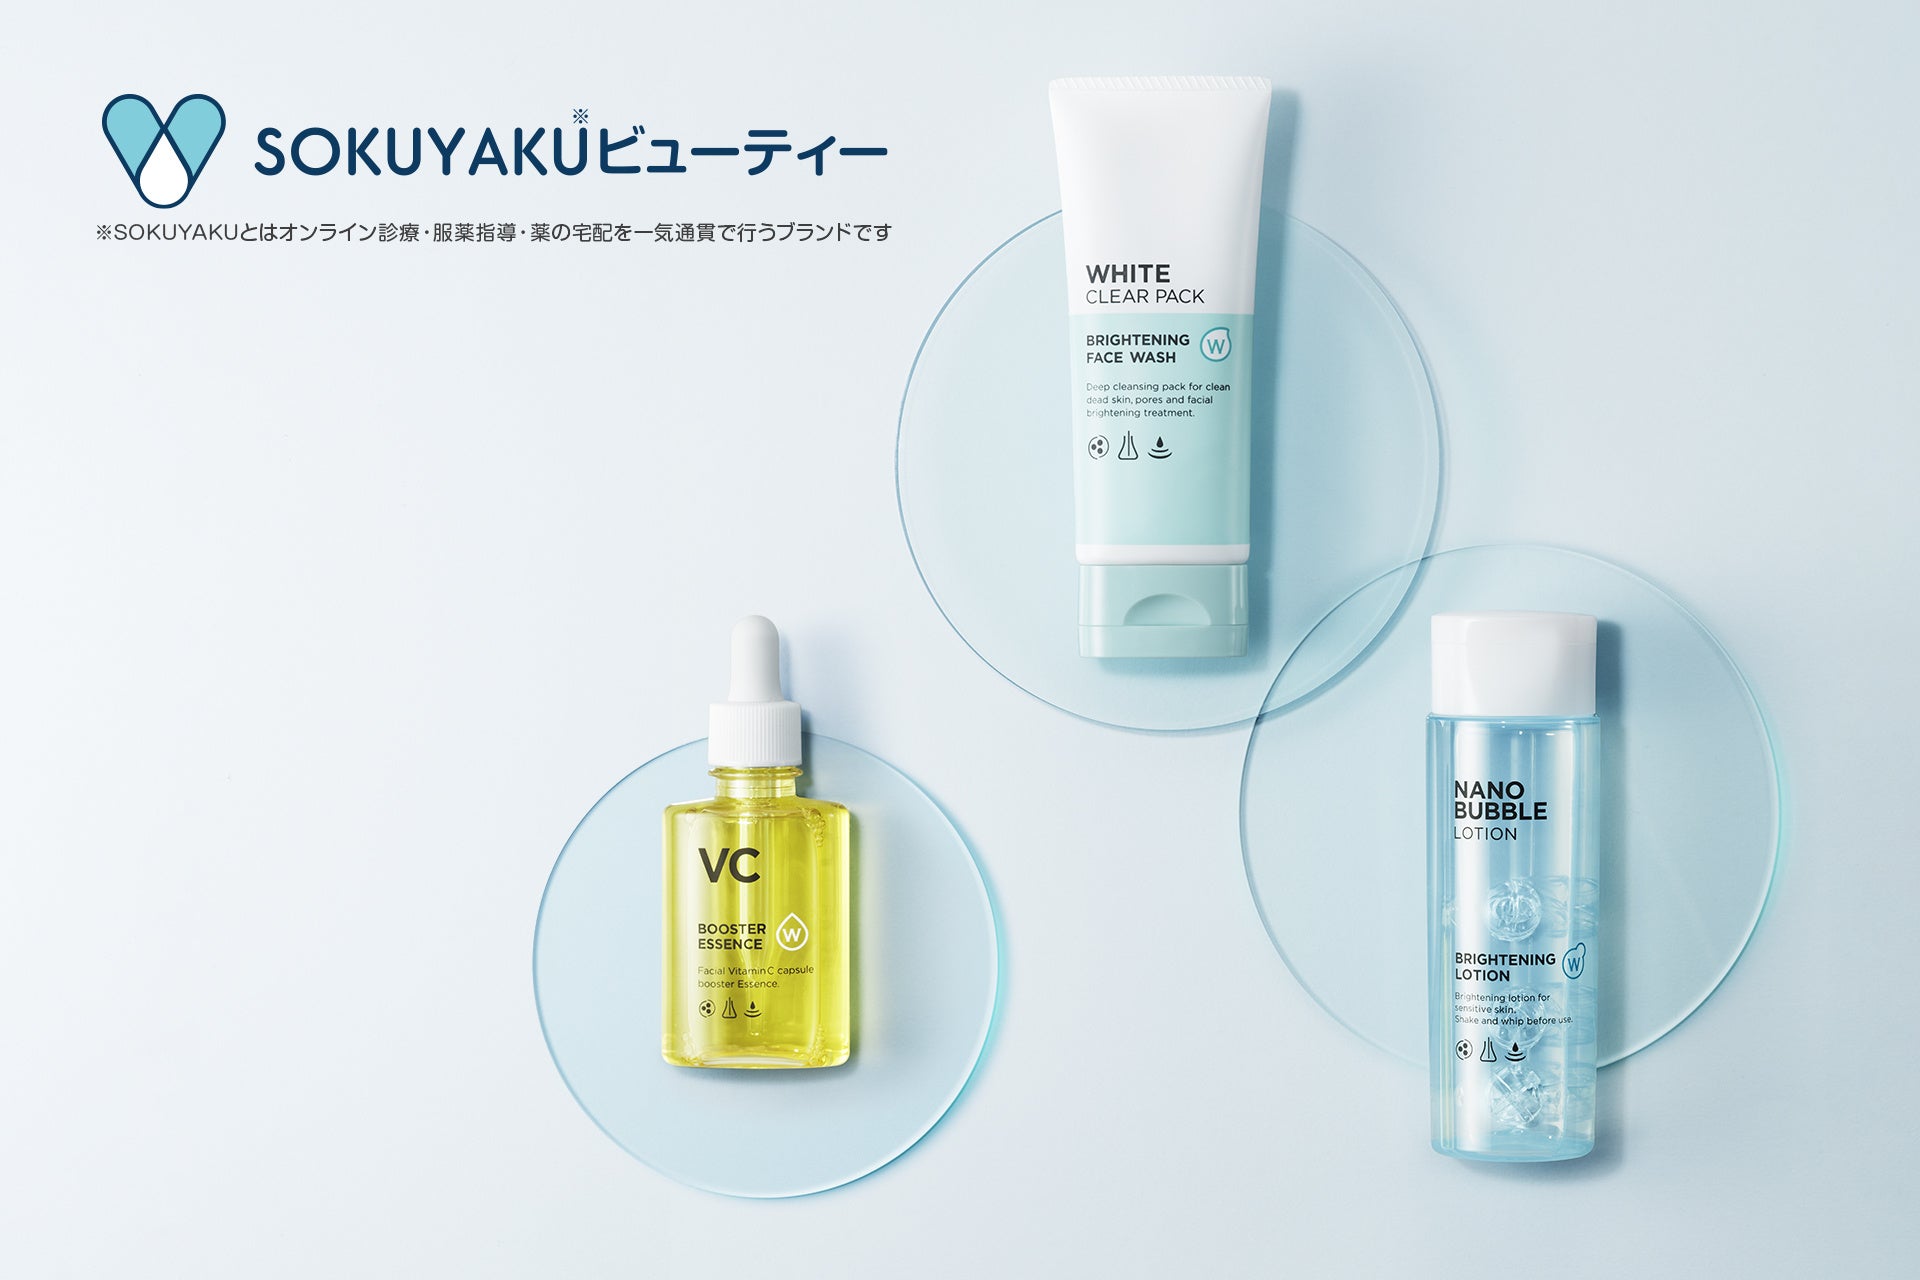 新規ブランドとして、SOKUYAKU※1ビューティーをリリース